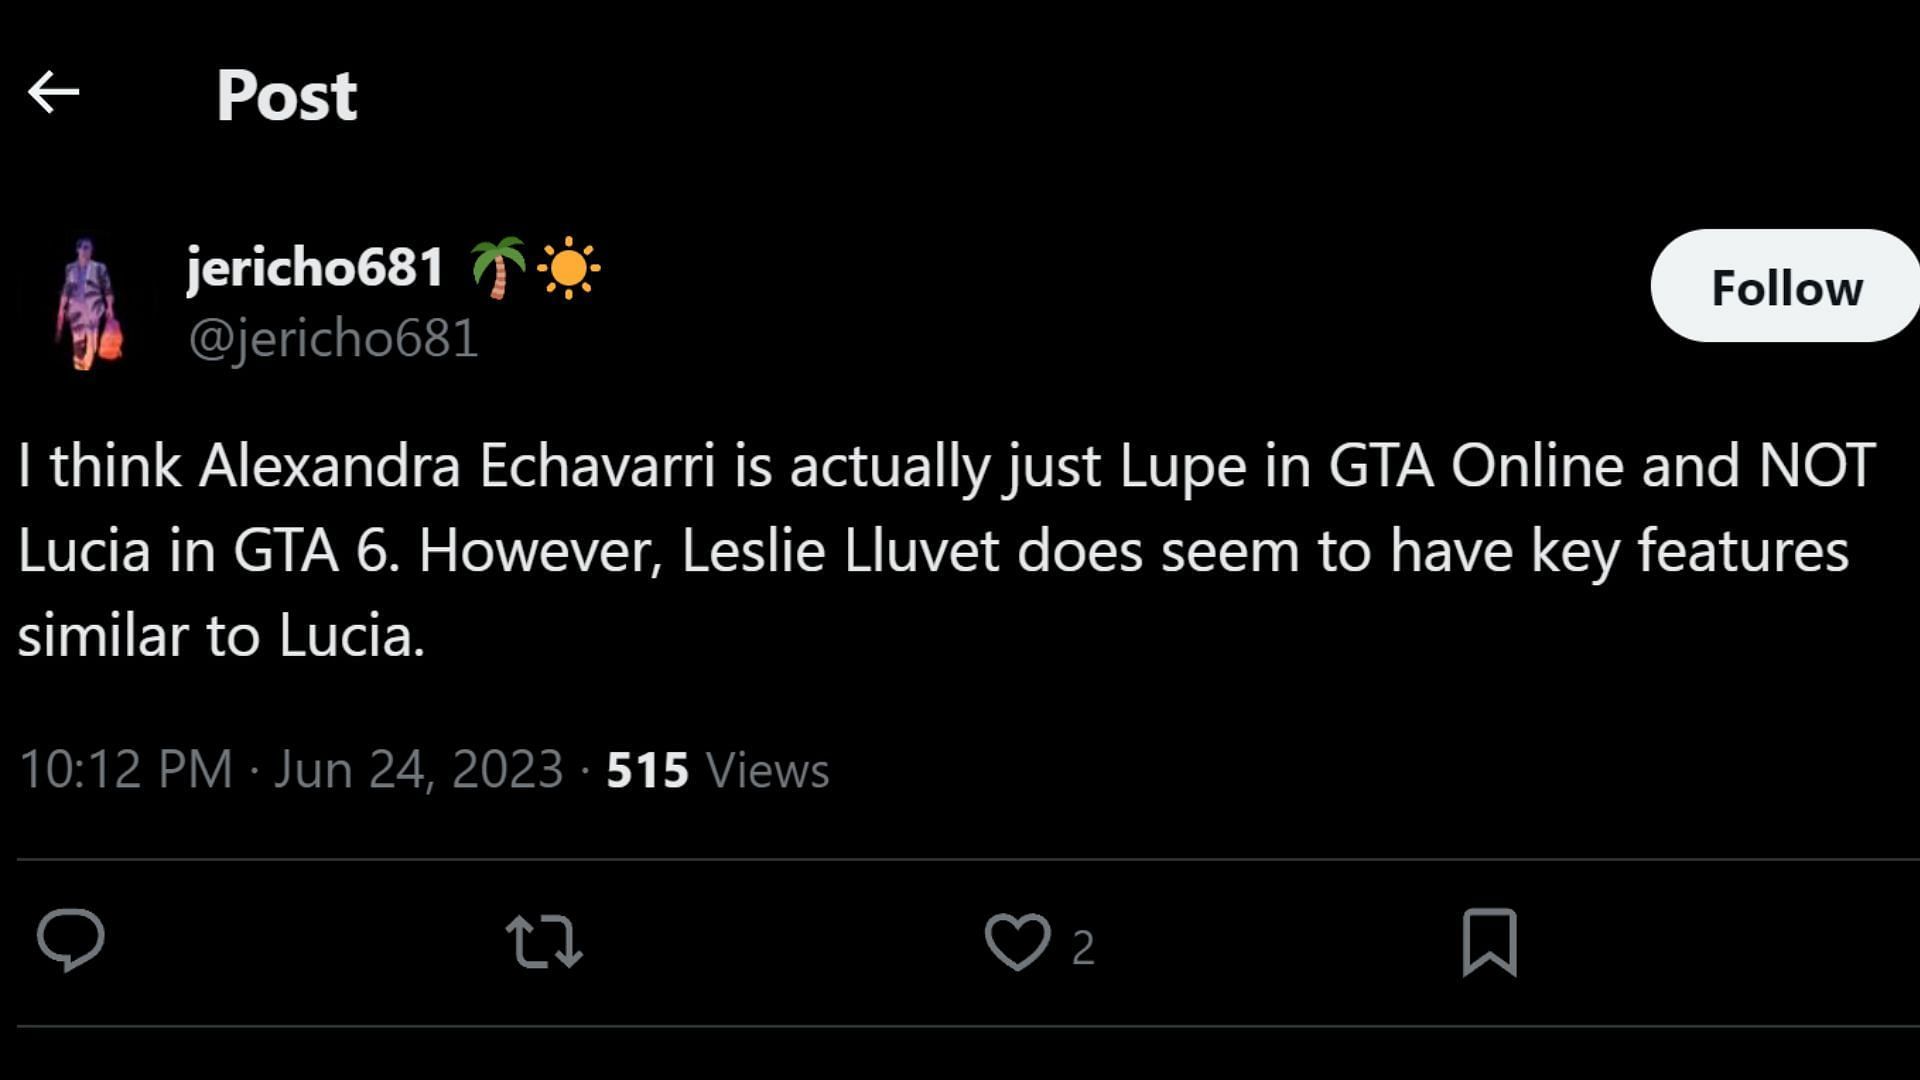 Some fans believe Leslie Lluvet is Lucia (Image via X, @jericho681)